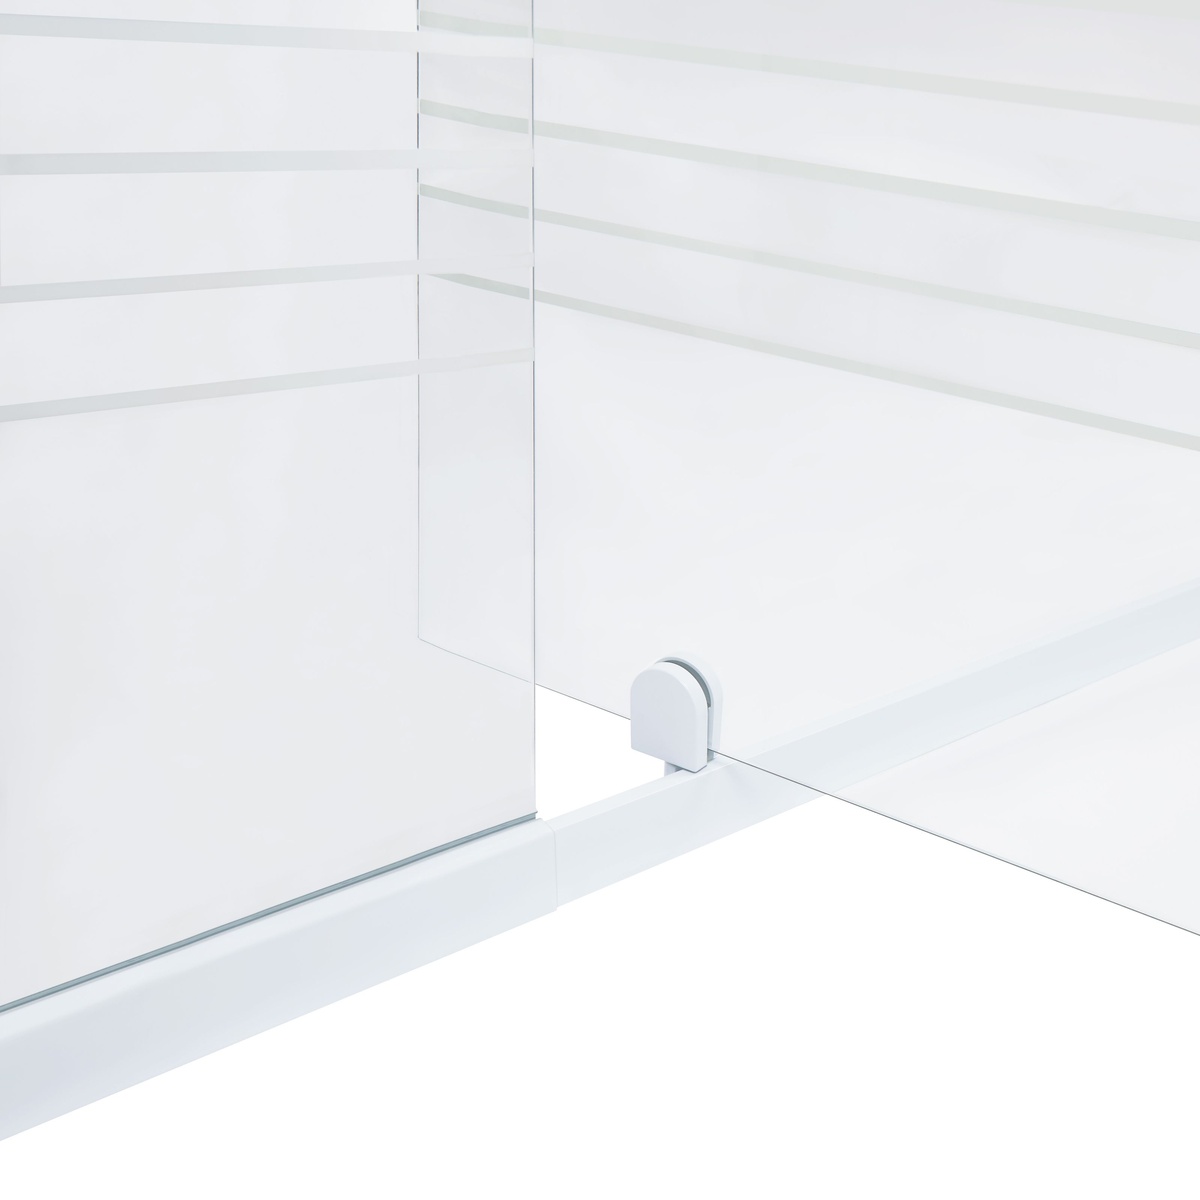 Двері скляні для душової ніші універсальні розпашні двосекційні Q-TAP Pisces 185x110см матове скло 5мм профіль білий PISWHI20111CP5